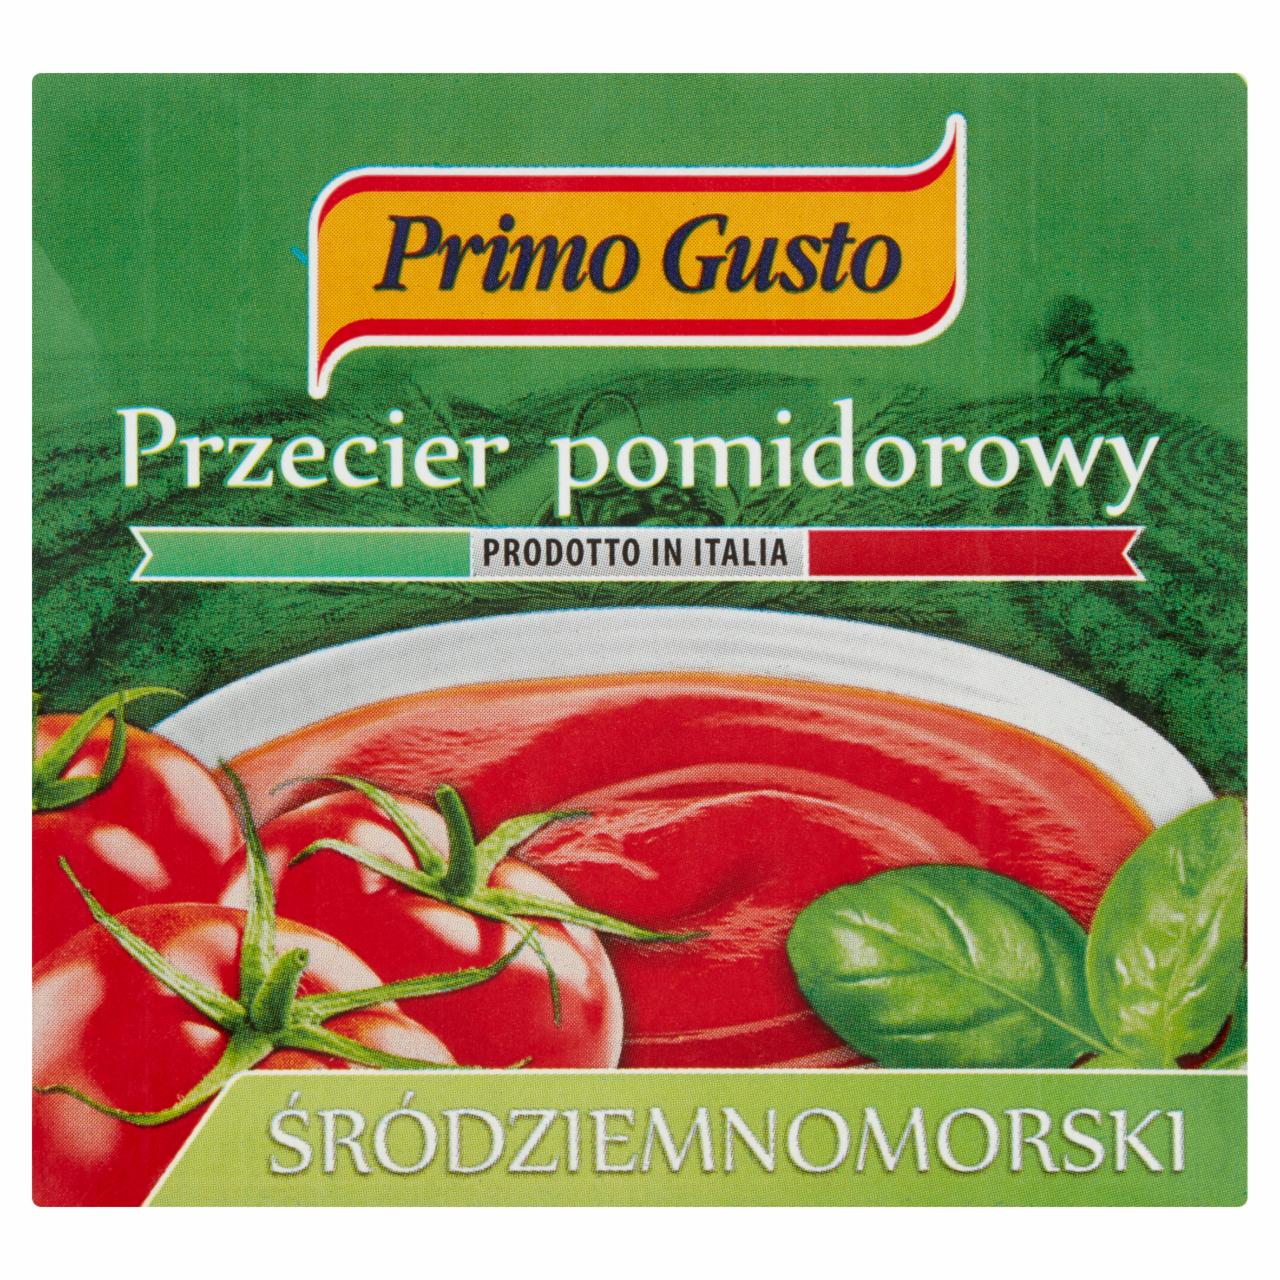 Zdjęcia - Primo Gusto Przecier pomidorowy śródziemnomorski 500 g